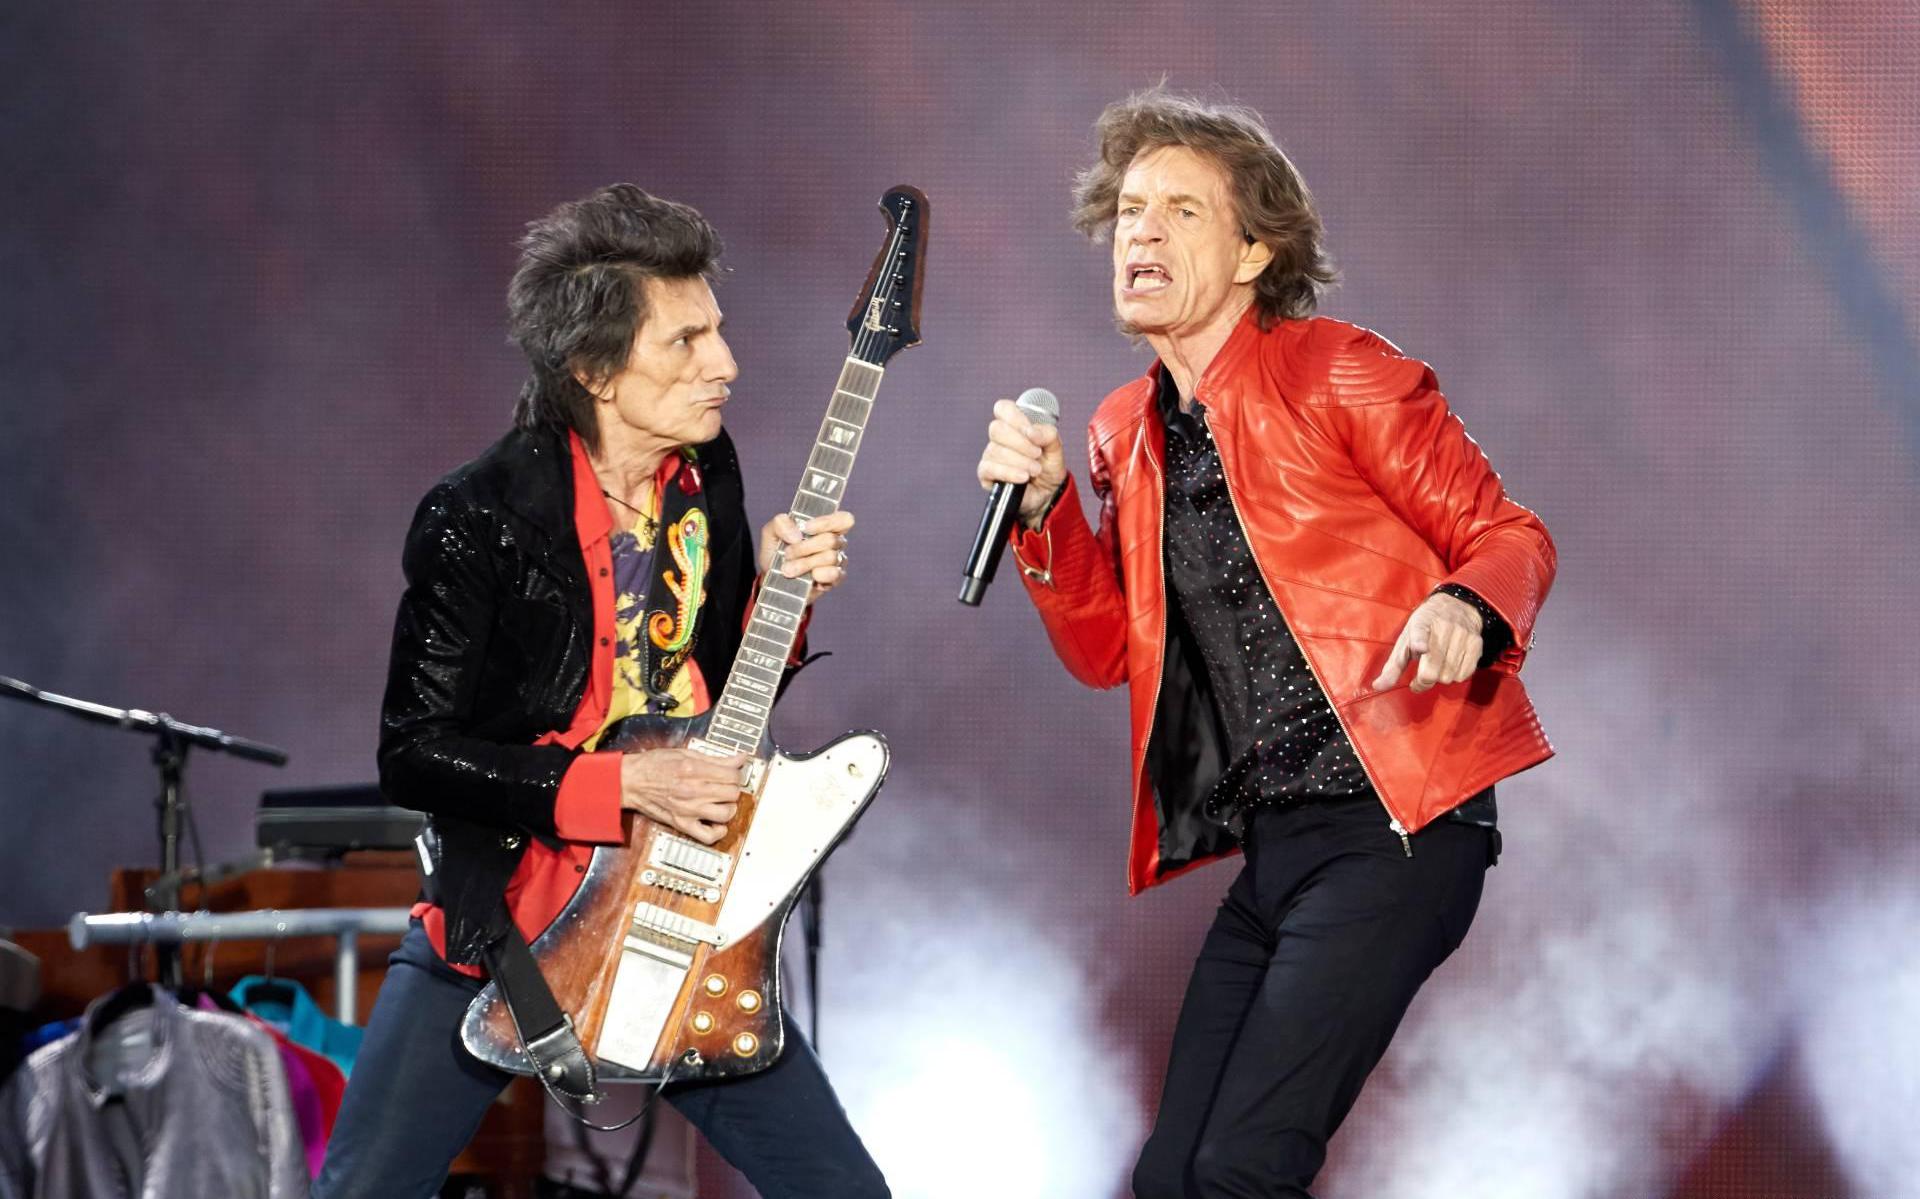 Rolling Stones na vijf jaar naar - Dagblad Noorden